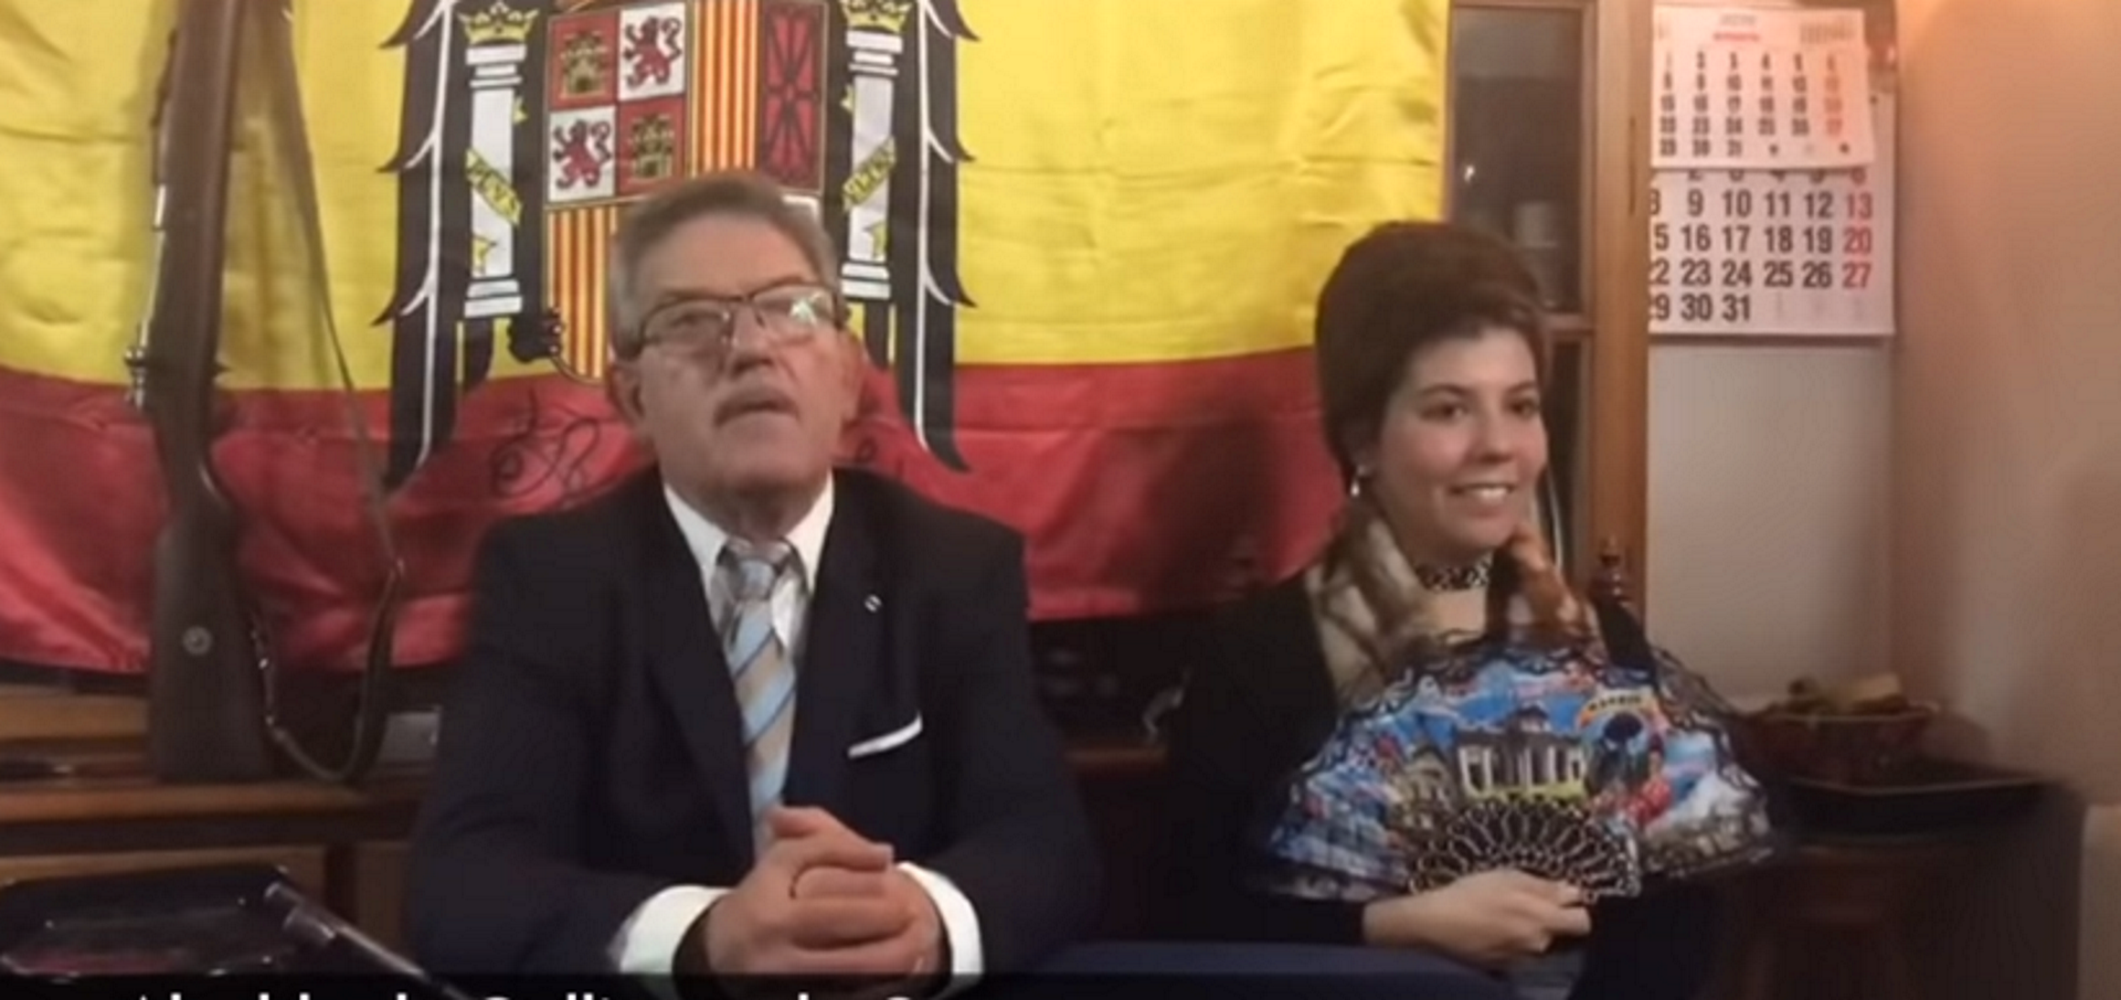 VÍDEO: Un alcalde del PP fa un discurs disfressat de Franco (i no passa res)